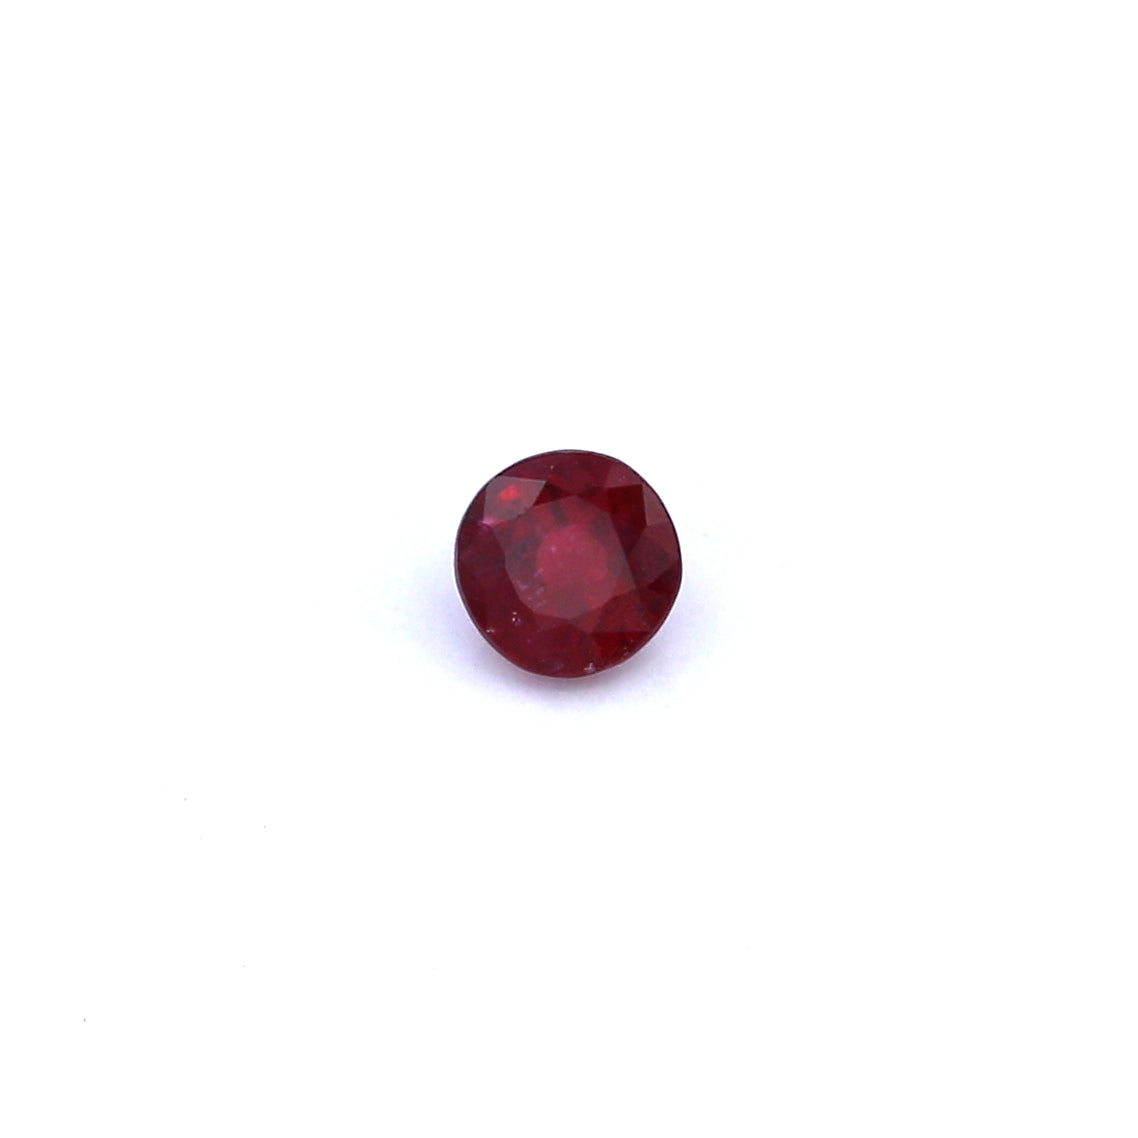 0.35ct Round Ruby, Heated, Thailand - 3.93 x 3.99 x 2.65mm